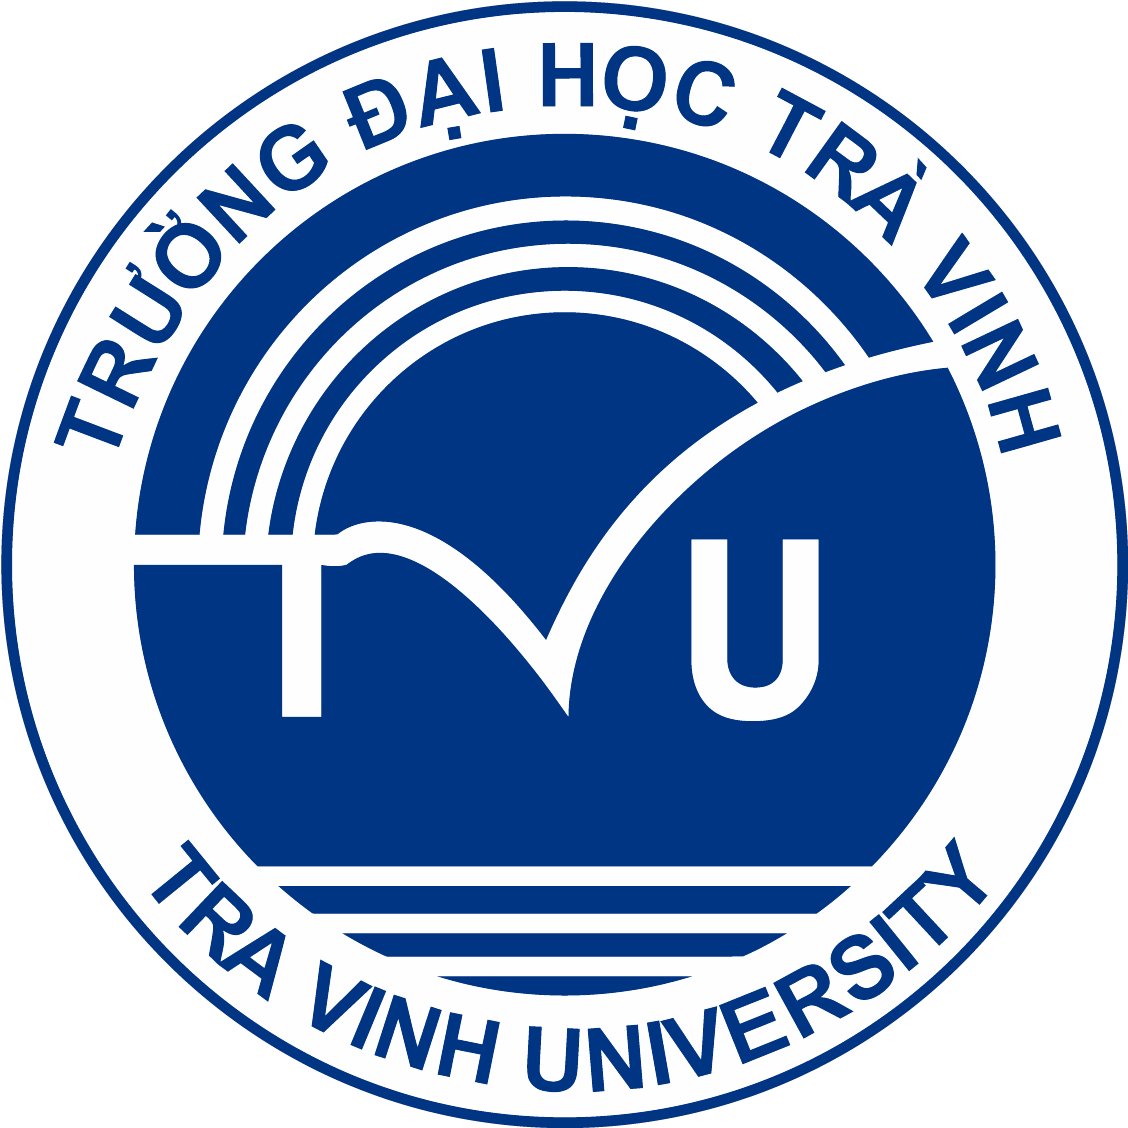 Tải mẫu logo trường đại học Trà Vinh (TVU) file vector AI, EPS ...